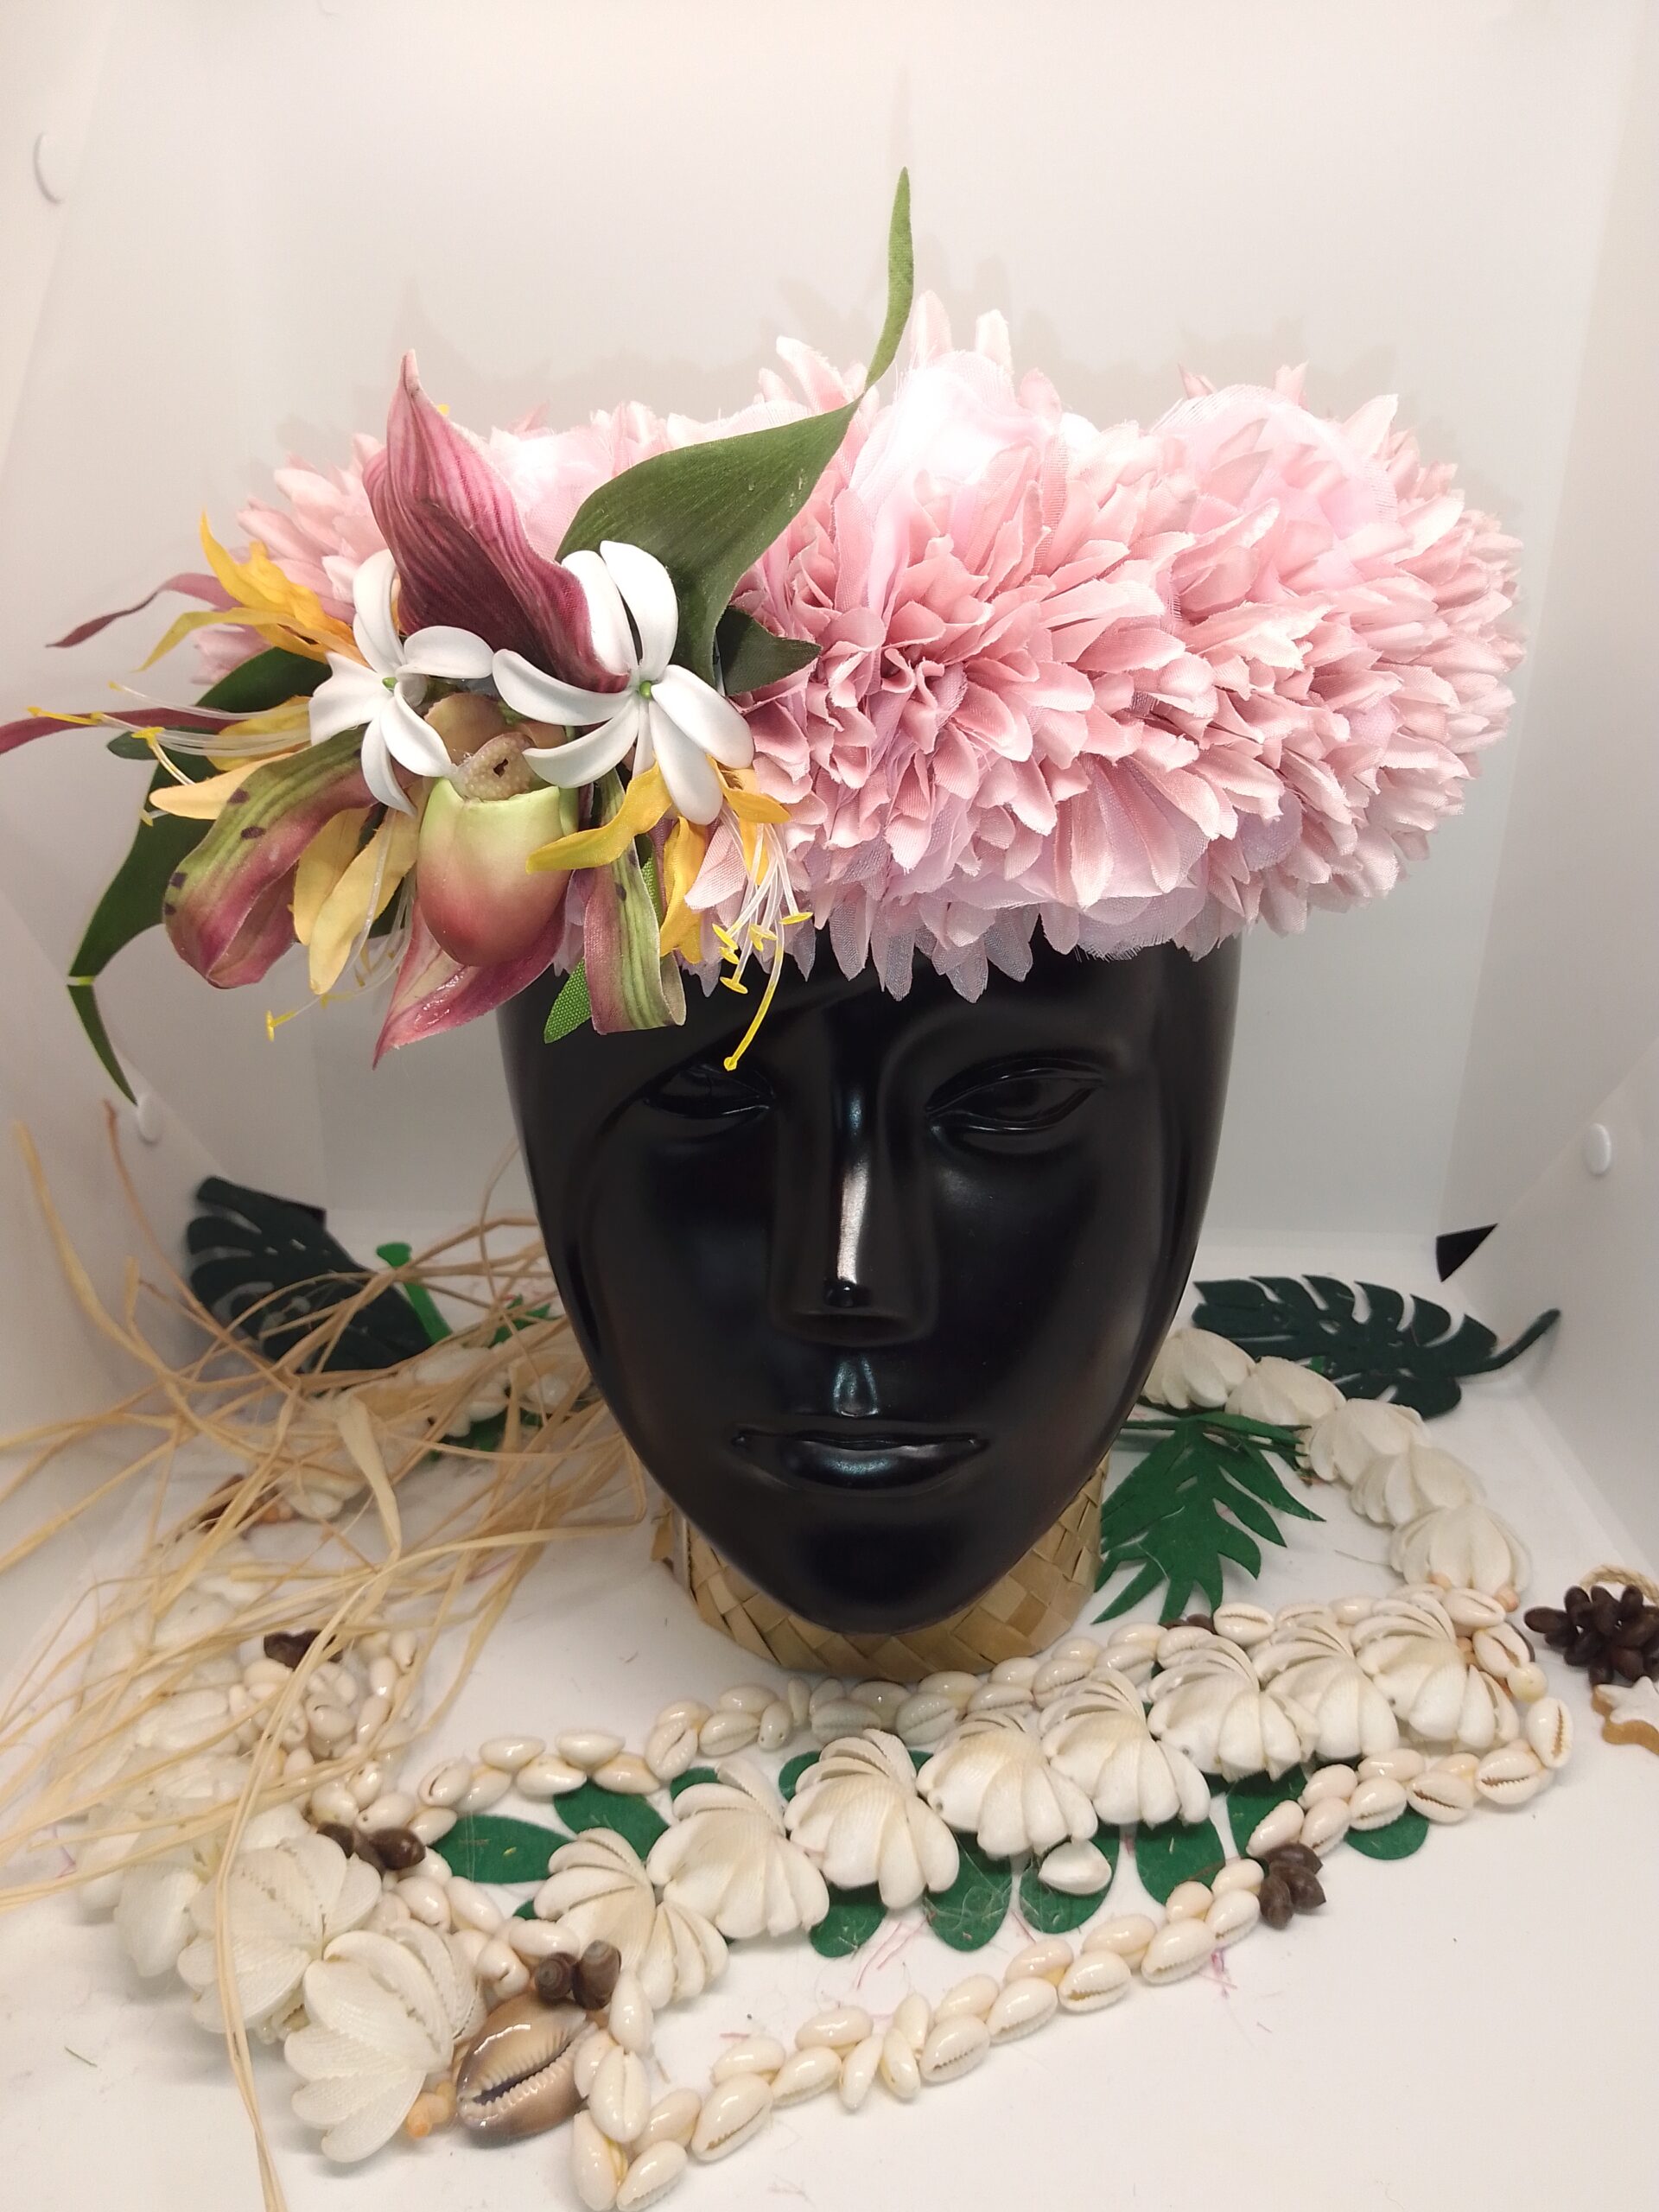 Couronne de tête artisanale fleurs polynésiennes permanentes rose Vaite e Tiare créations avec une orchidée d'exception, des lys élancés jaunes et des deux mini tiare tahiti